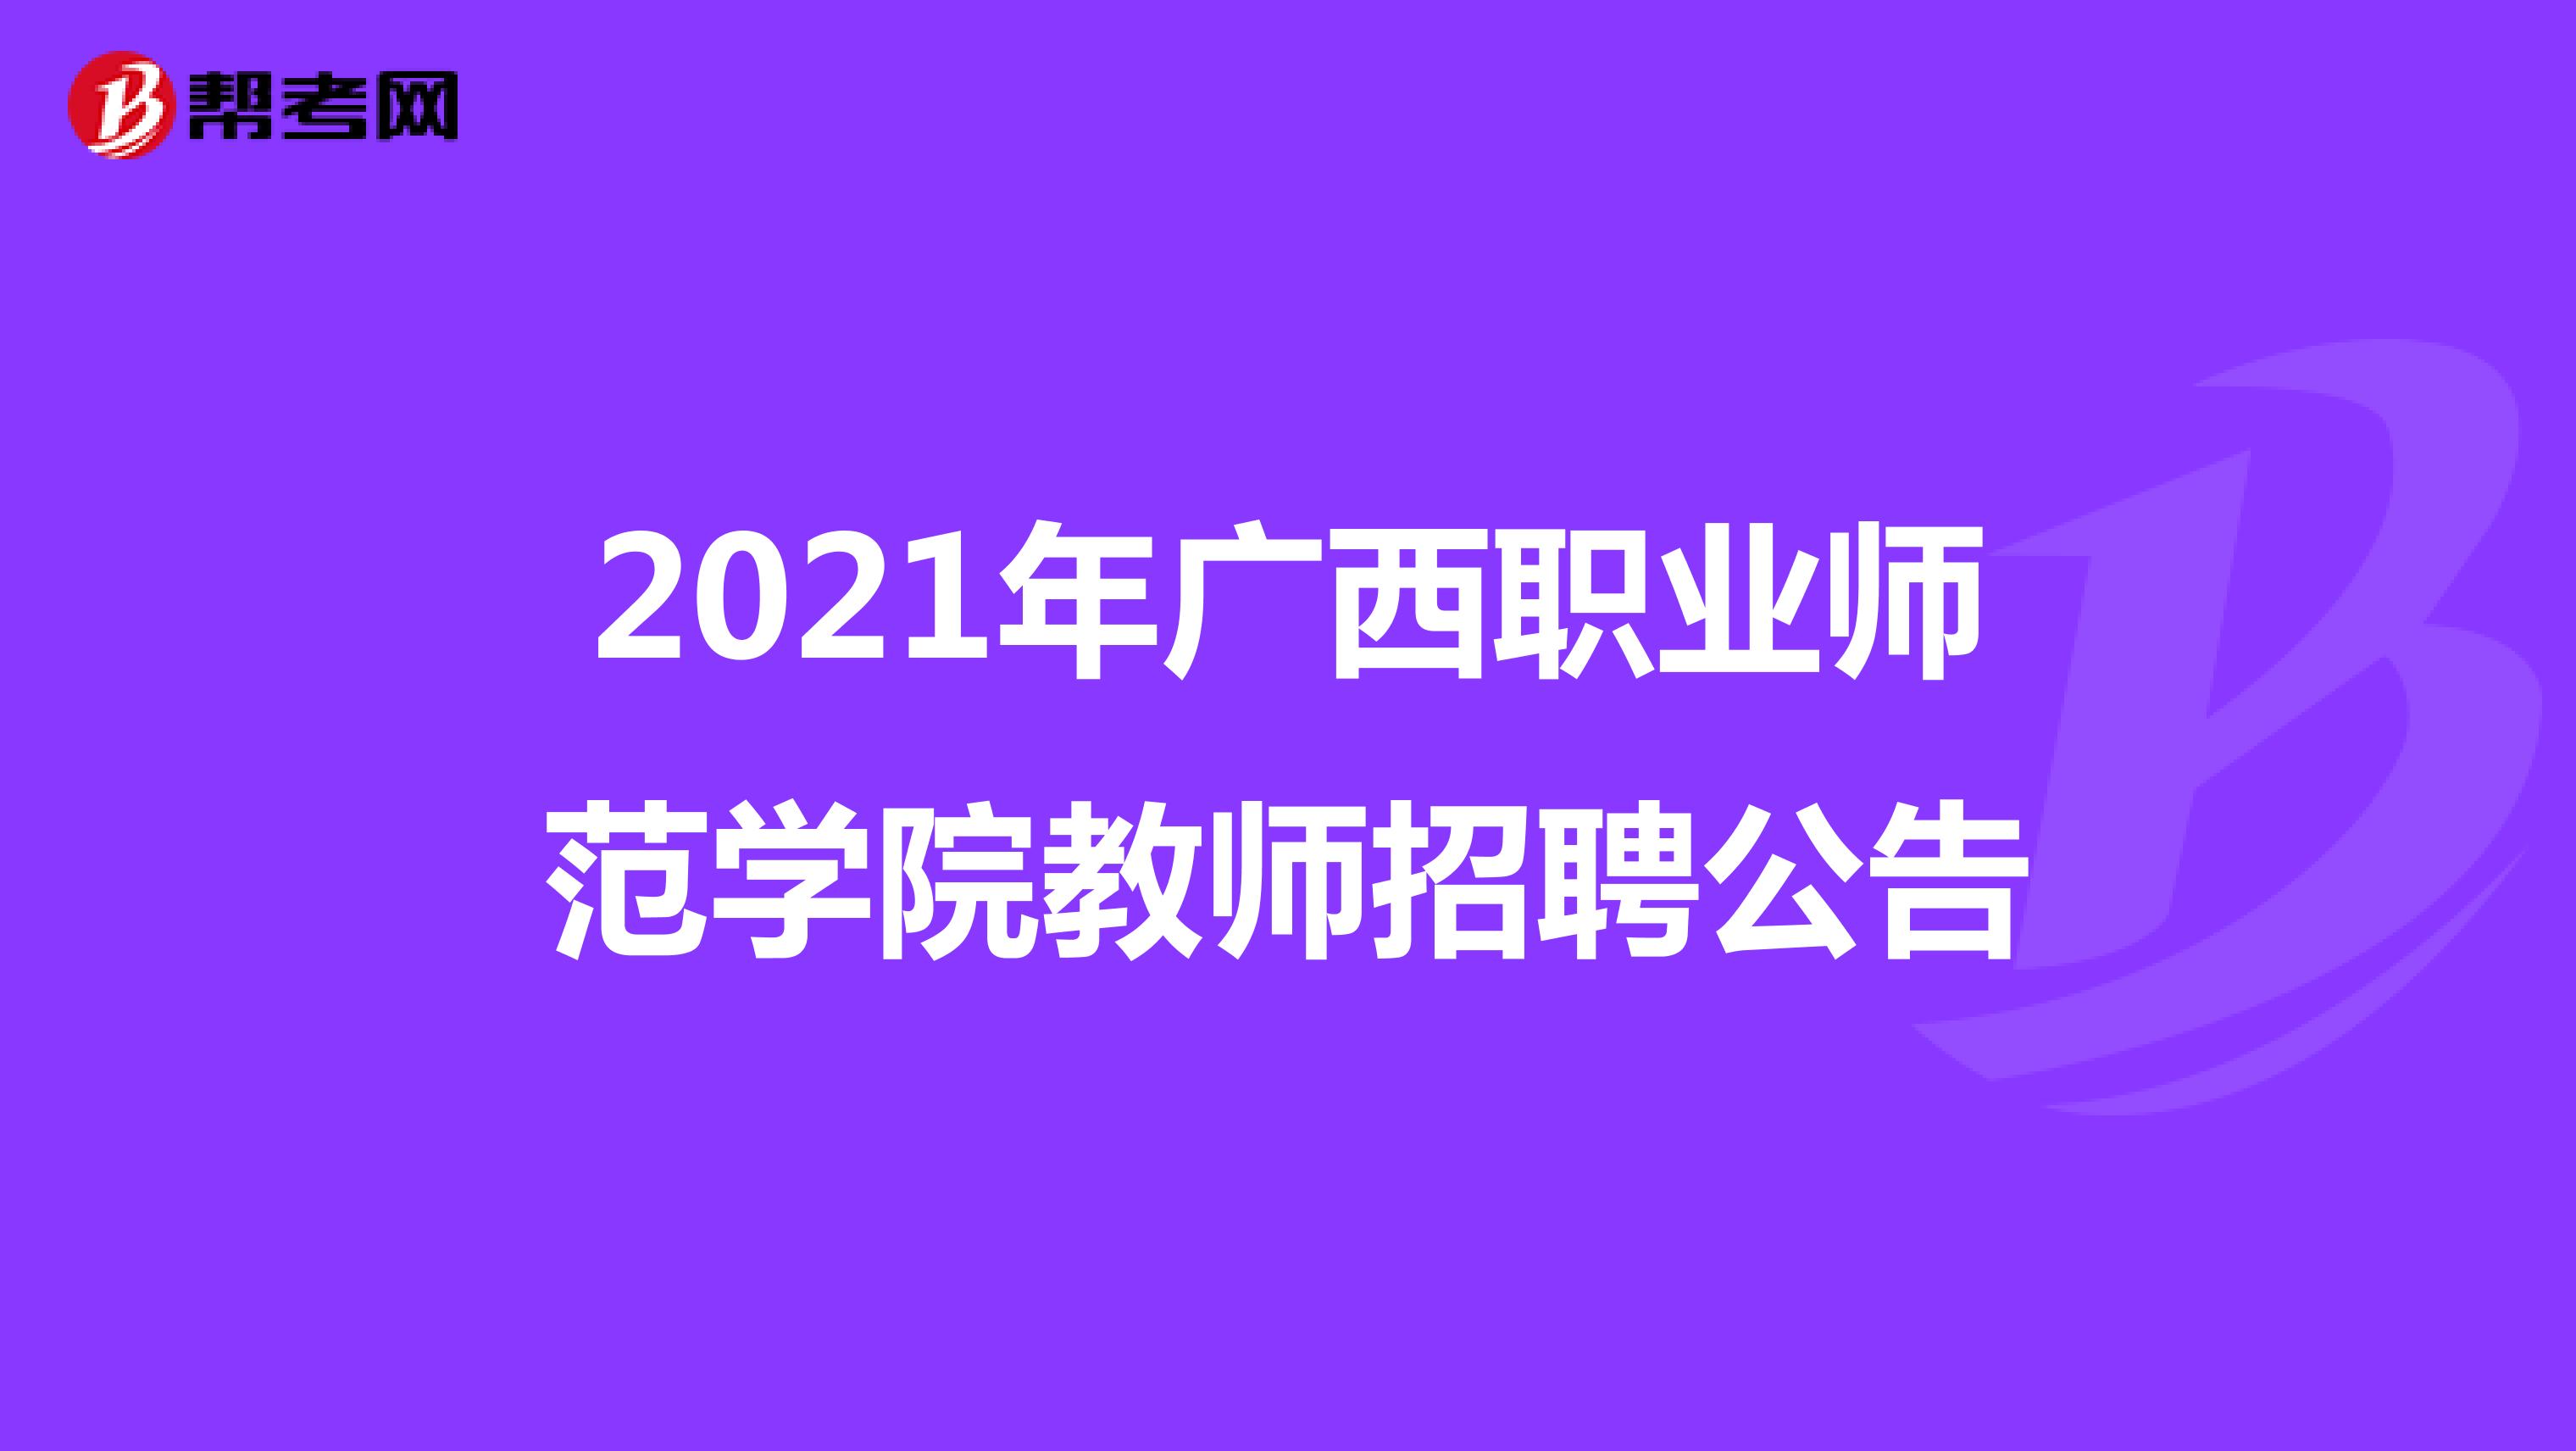 2021年广西职业师范学院教师招聘公告